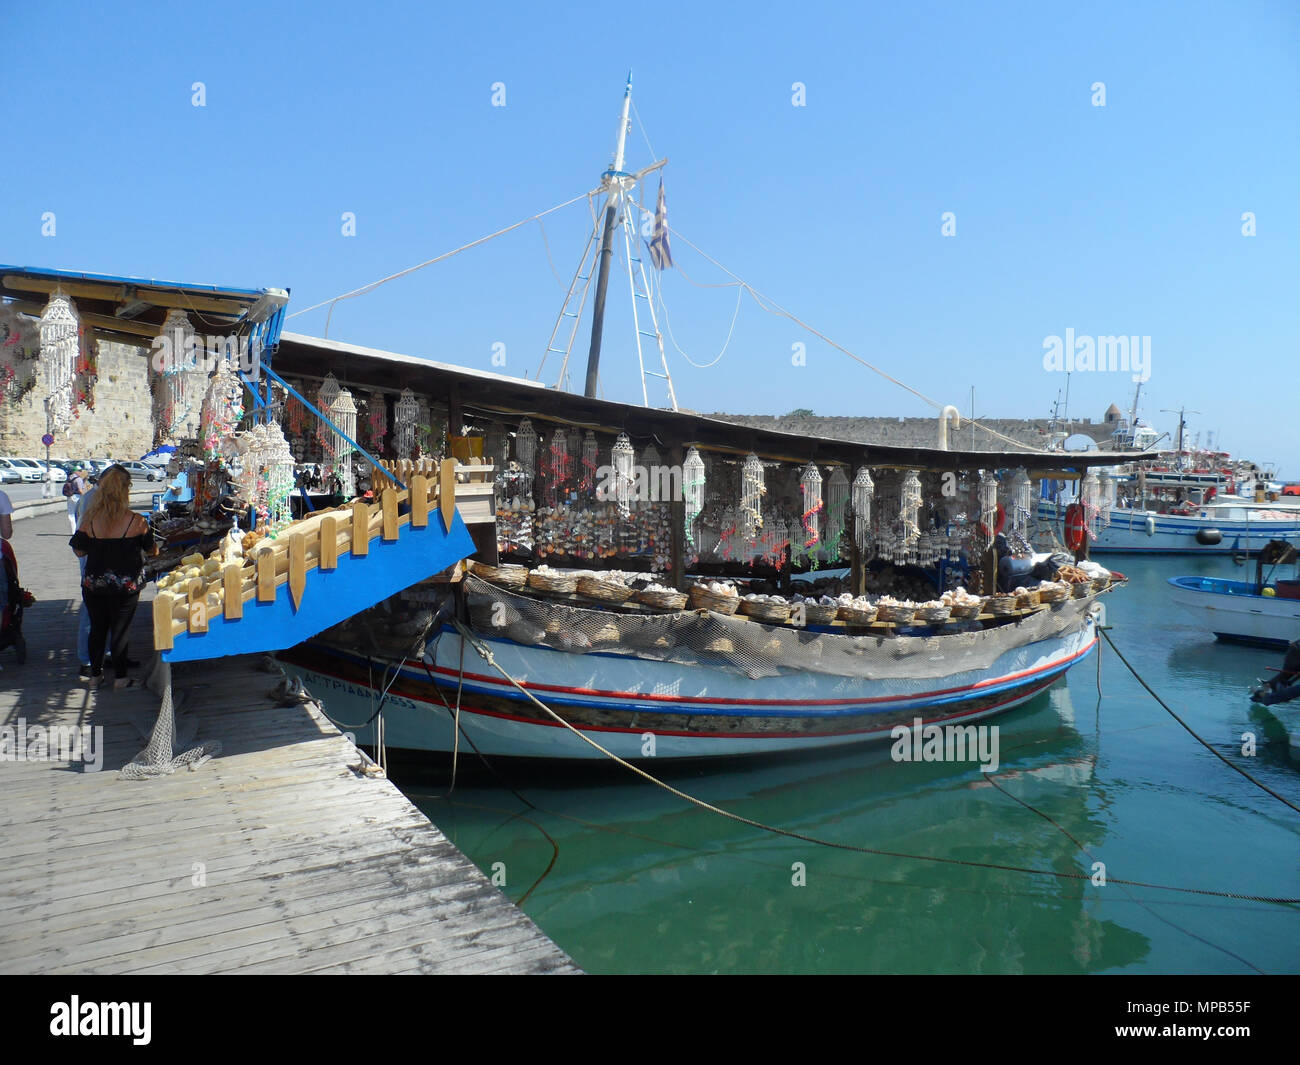 Les touristes parcourir les articles sur un bateau de pêche grec transformé en un magasin de souvenirs au port de Rhodes, Grèce. Banque D'Images